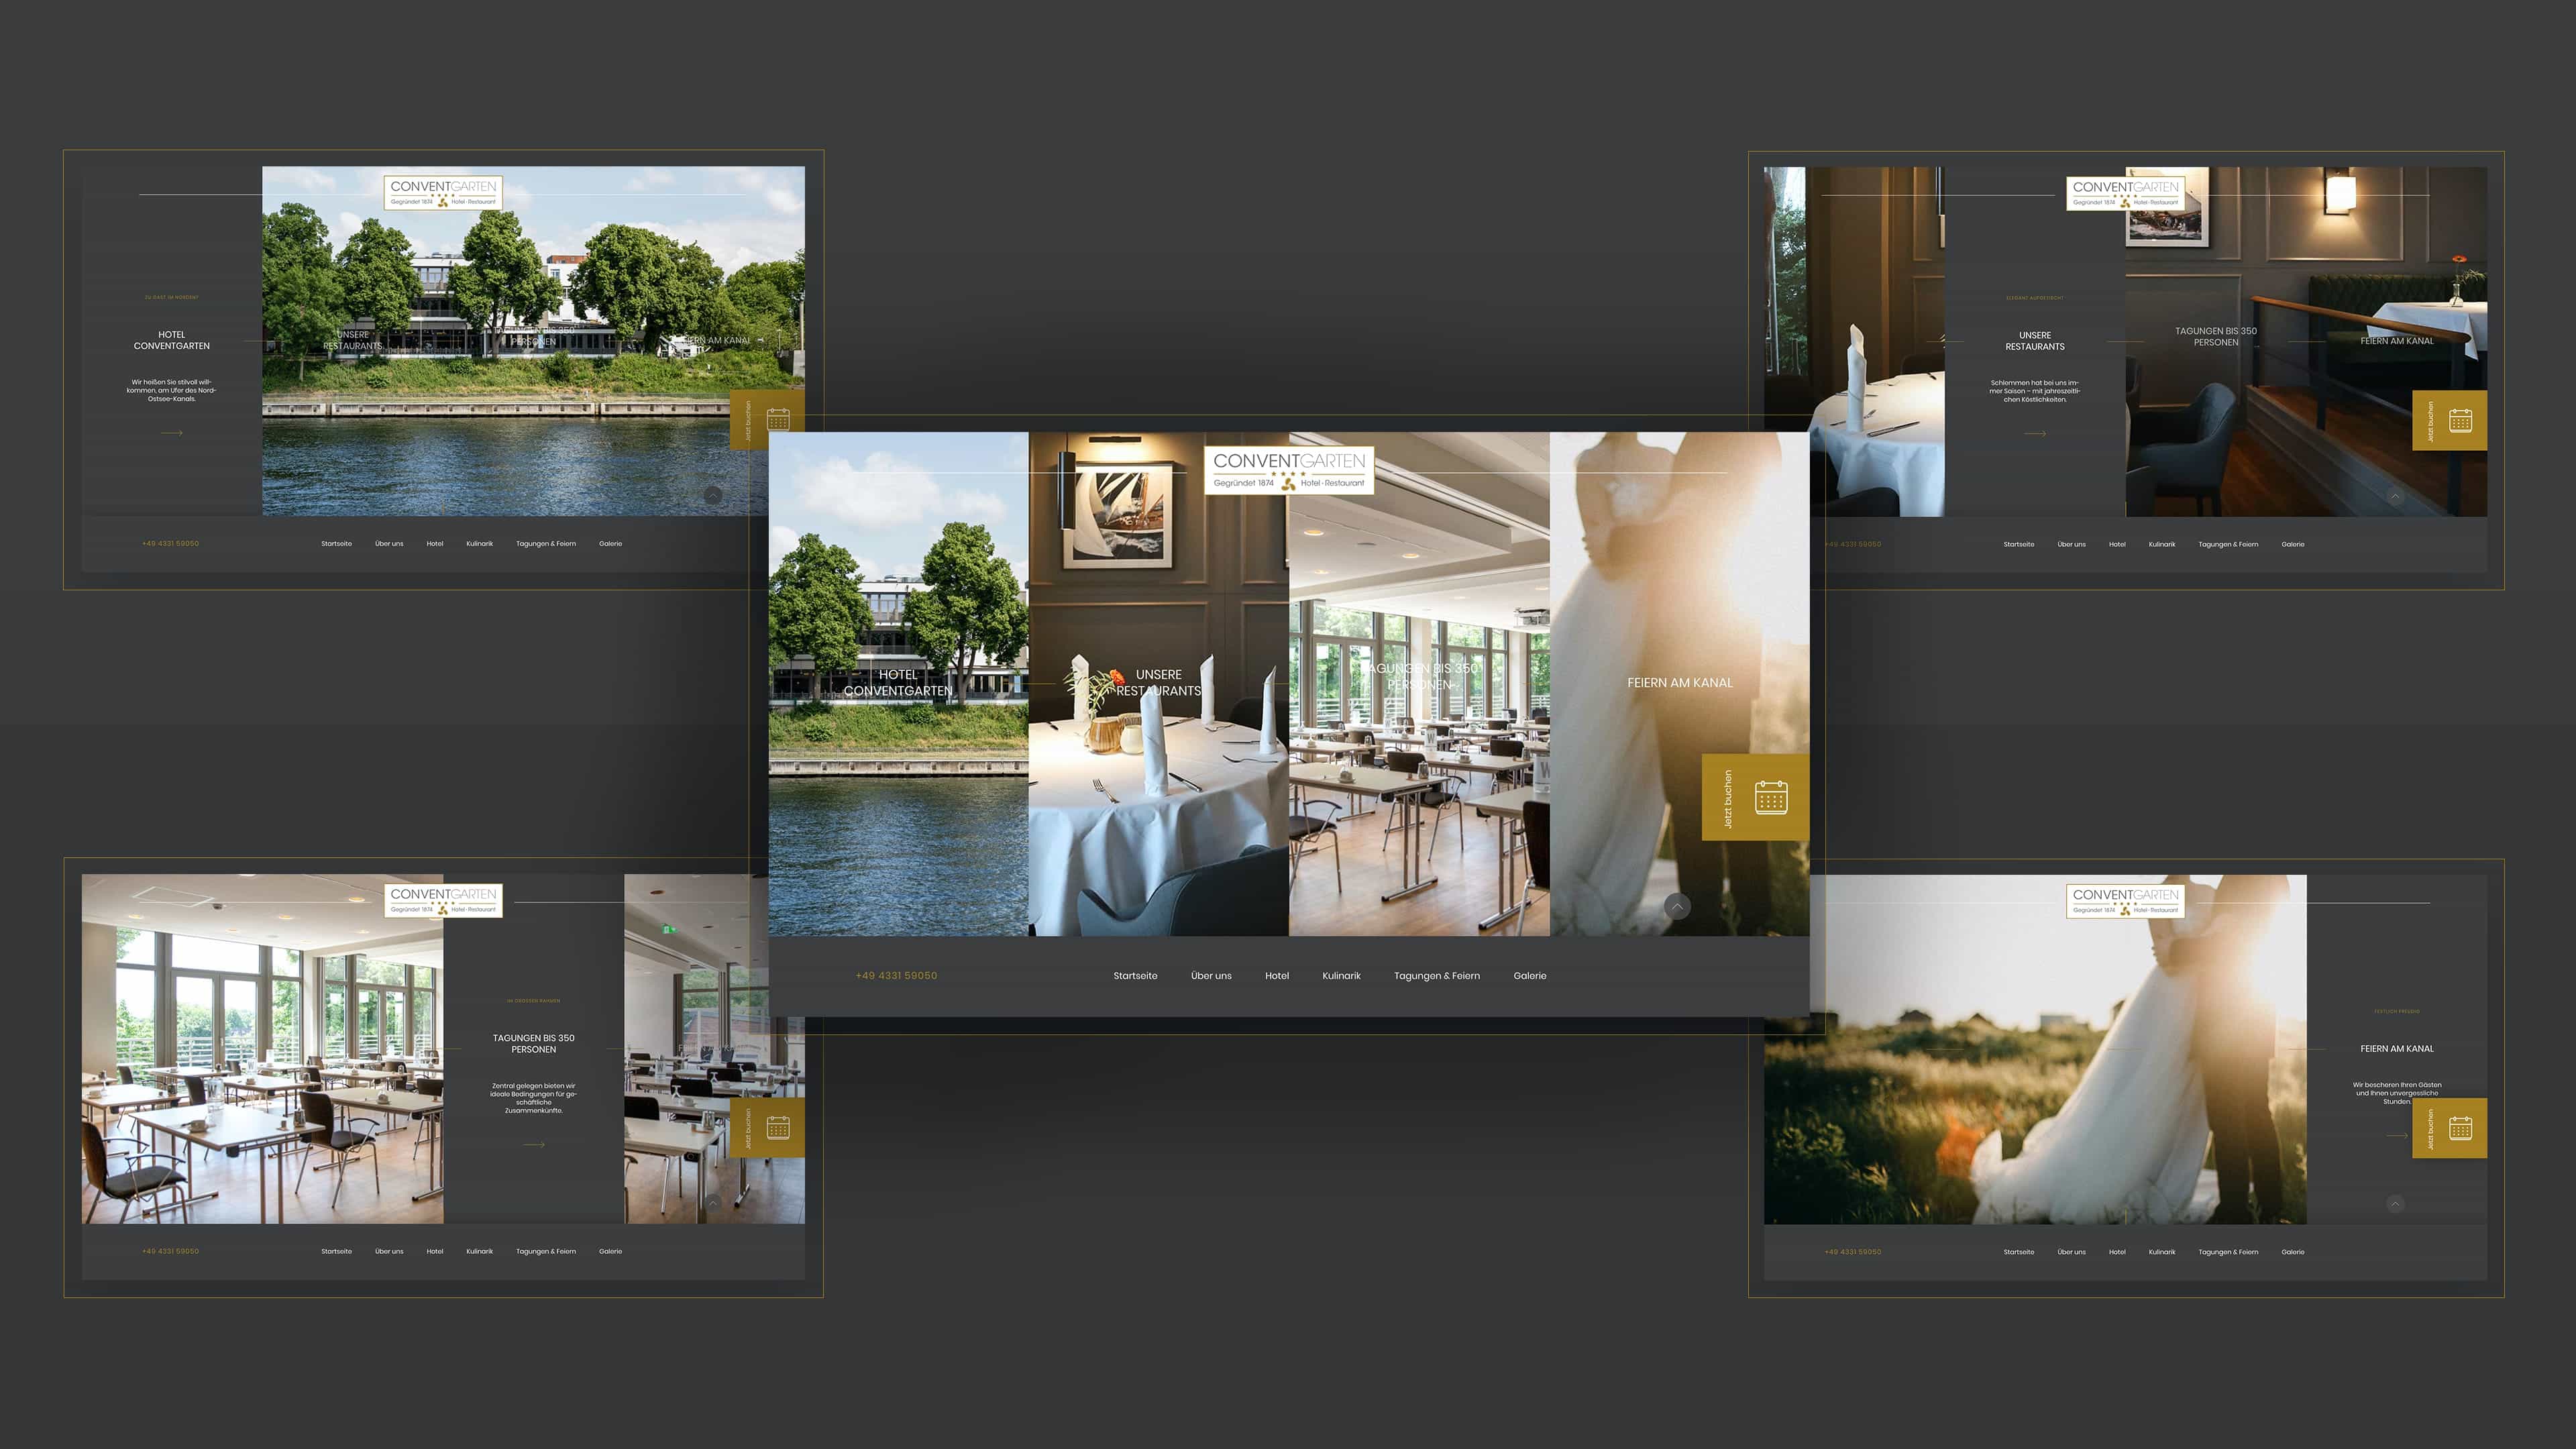 Collage mehrerer Ansichten der Website Hotel Conventgarten mit großen Innen- und Außenaufnahmen